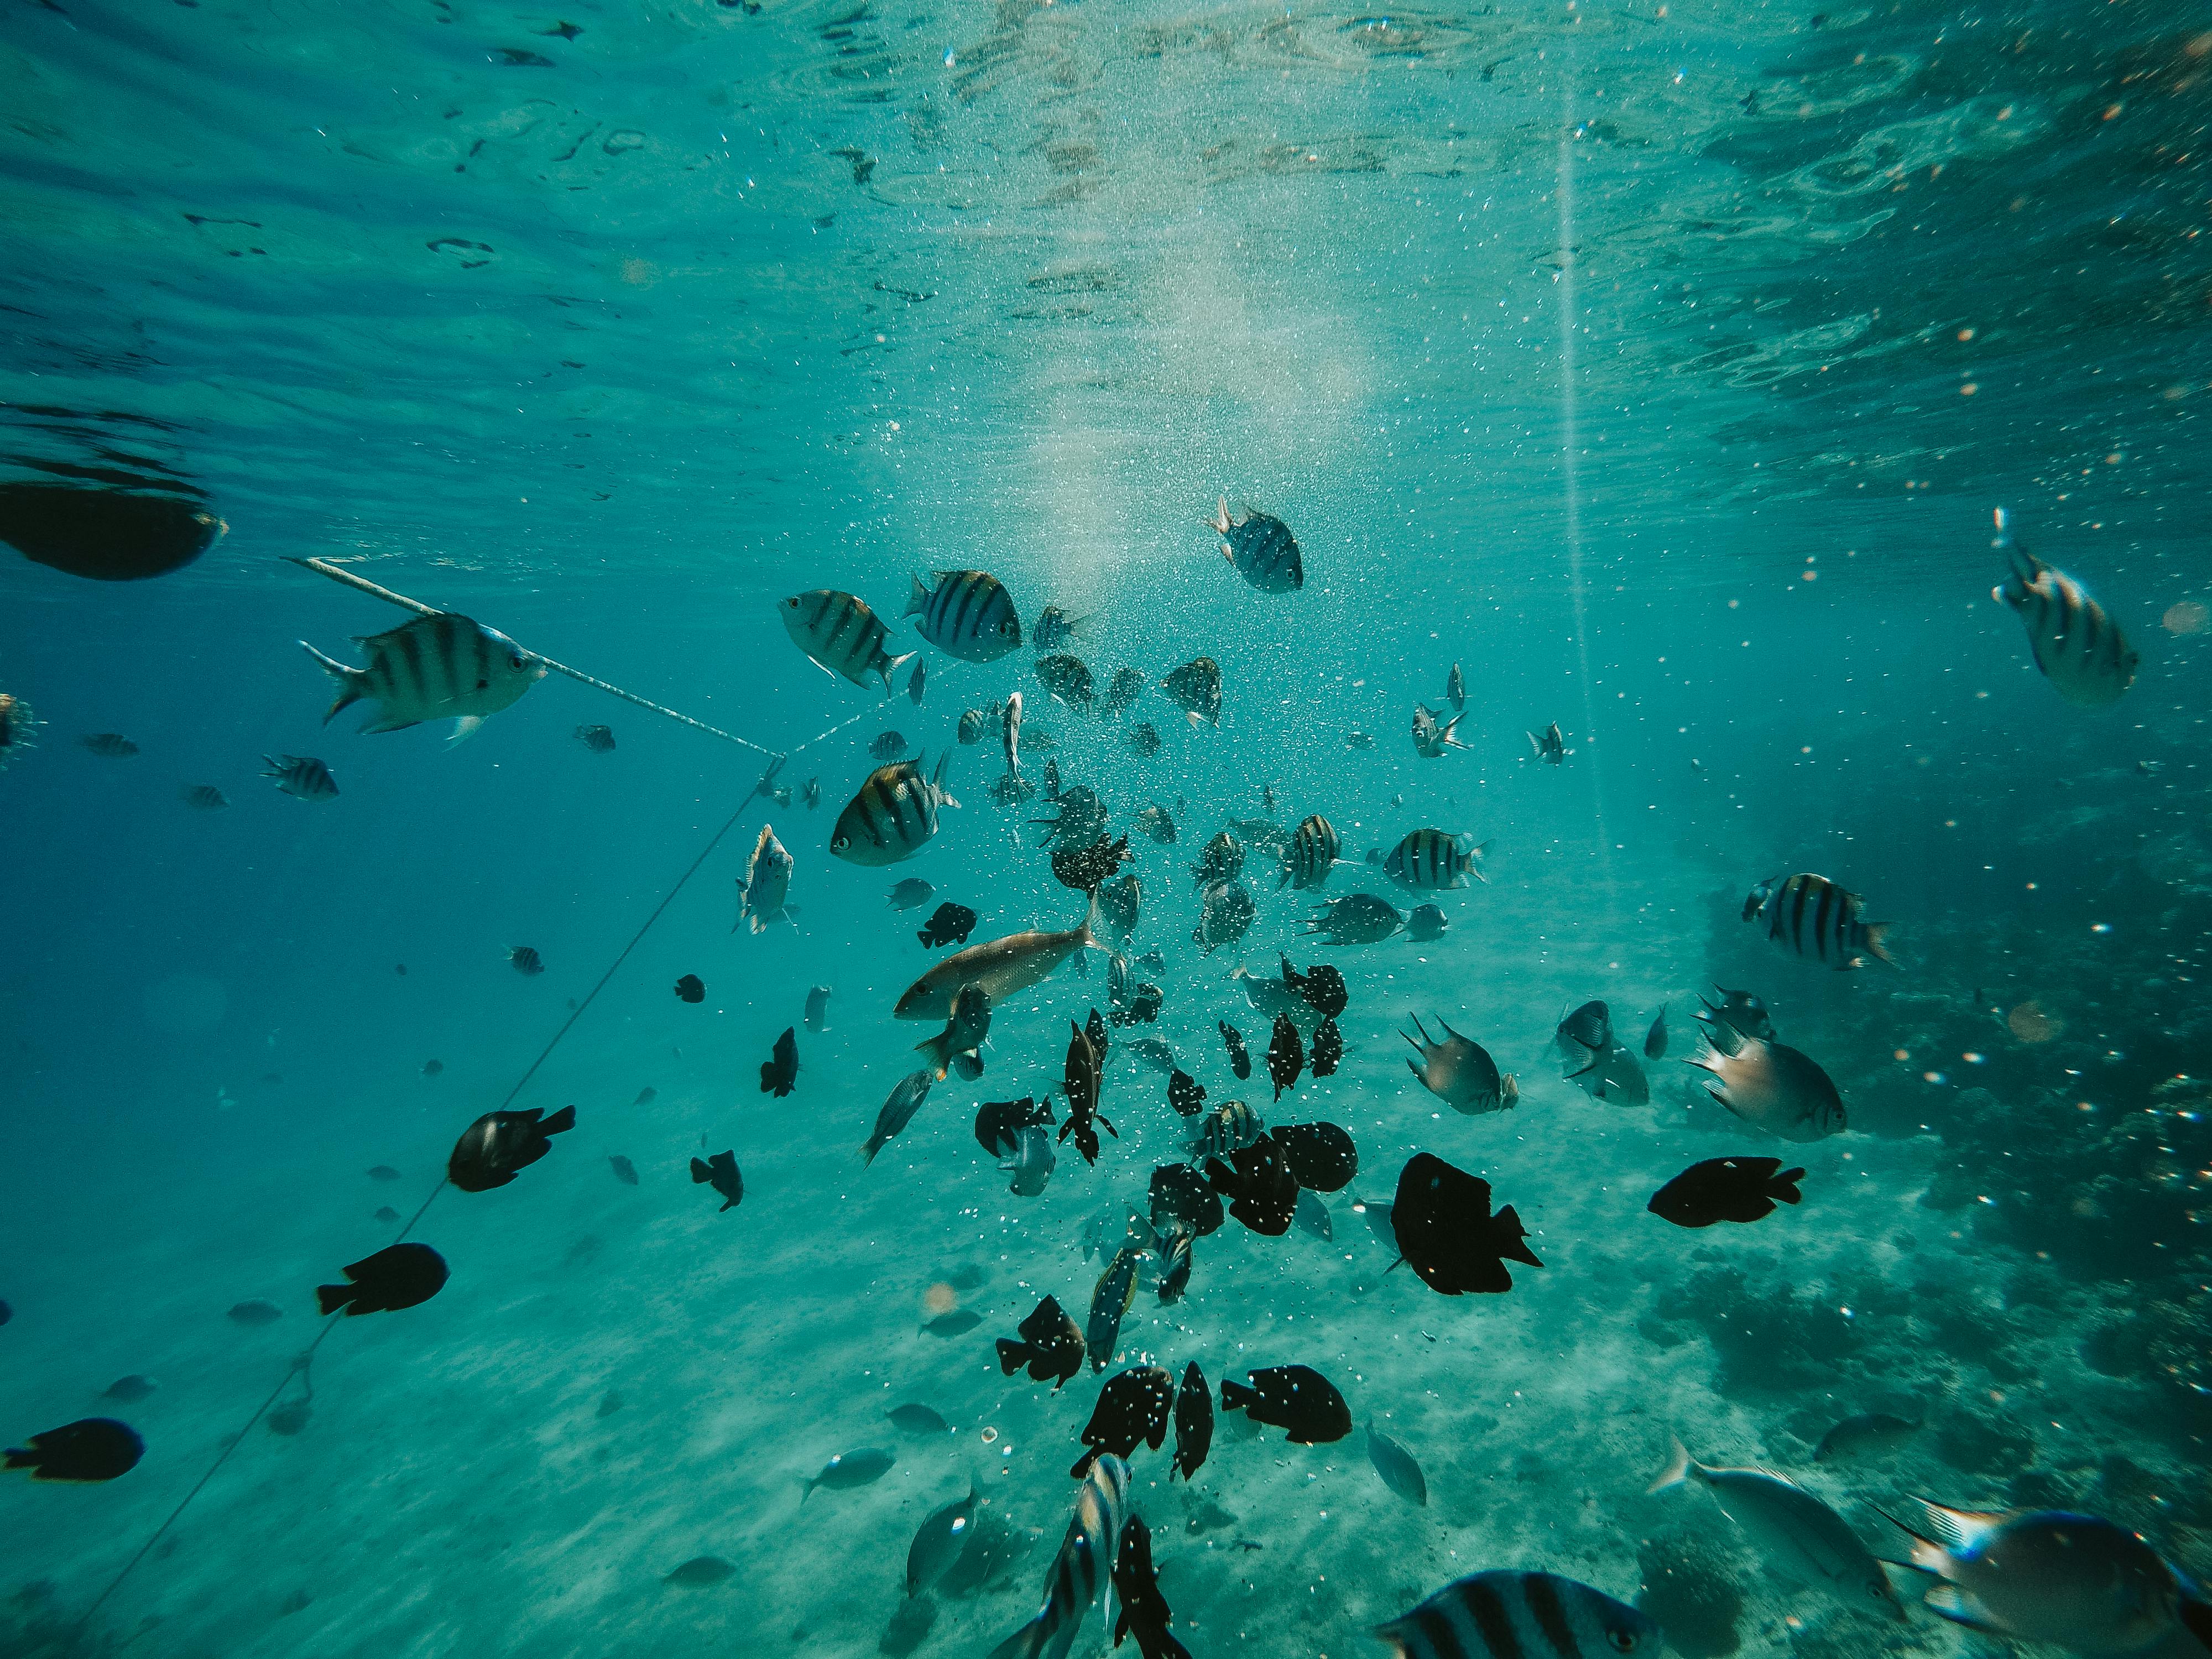 Fish Underwater Photos, Download The BEST Free Fish Underwater